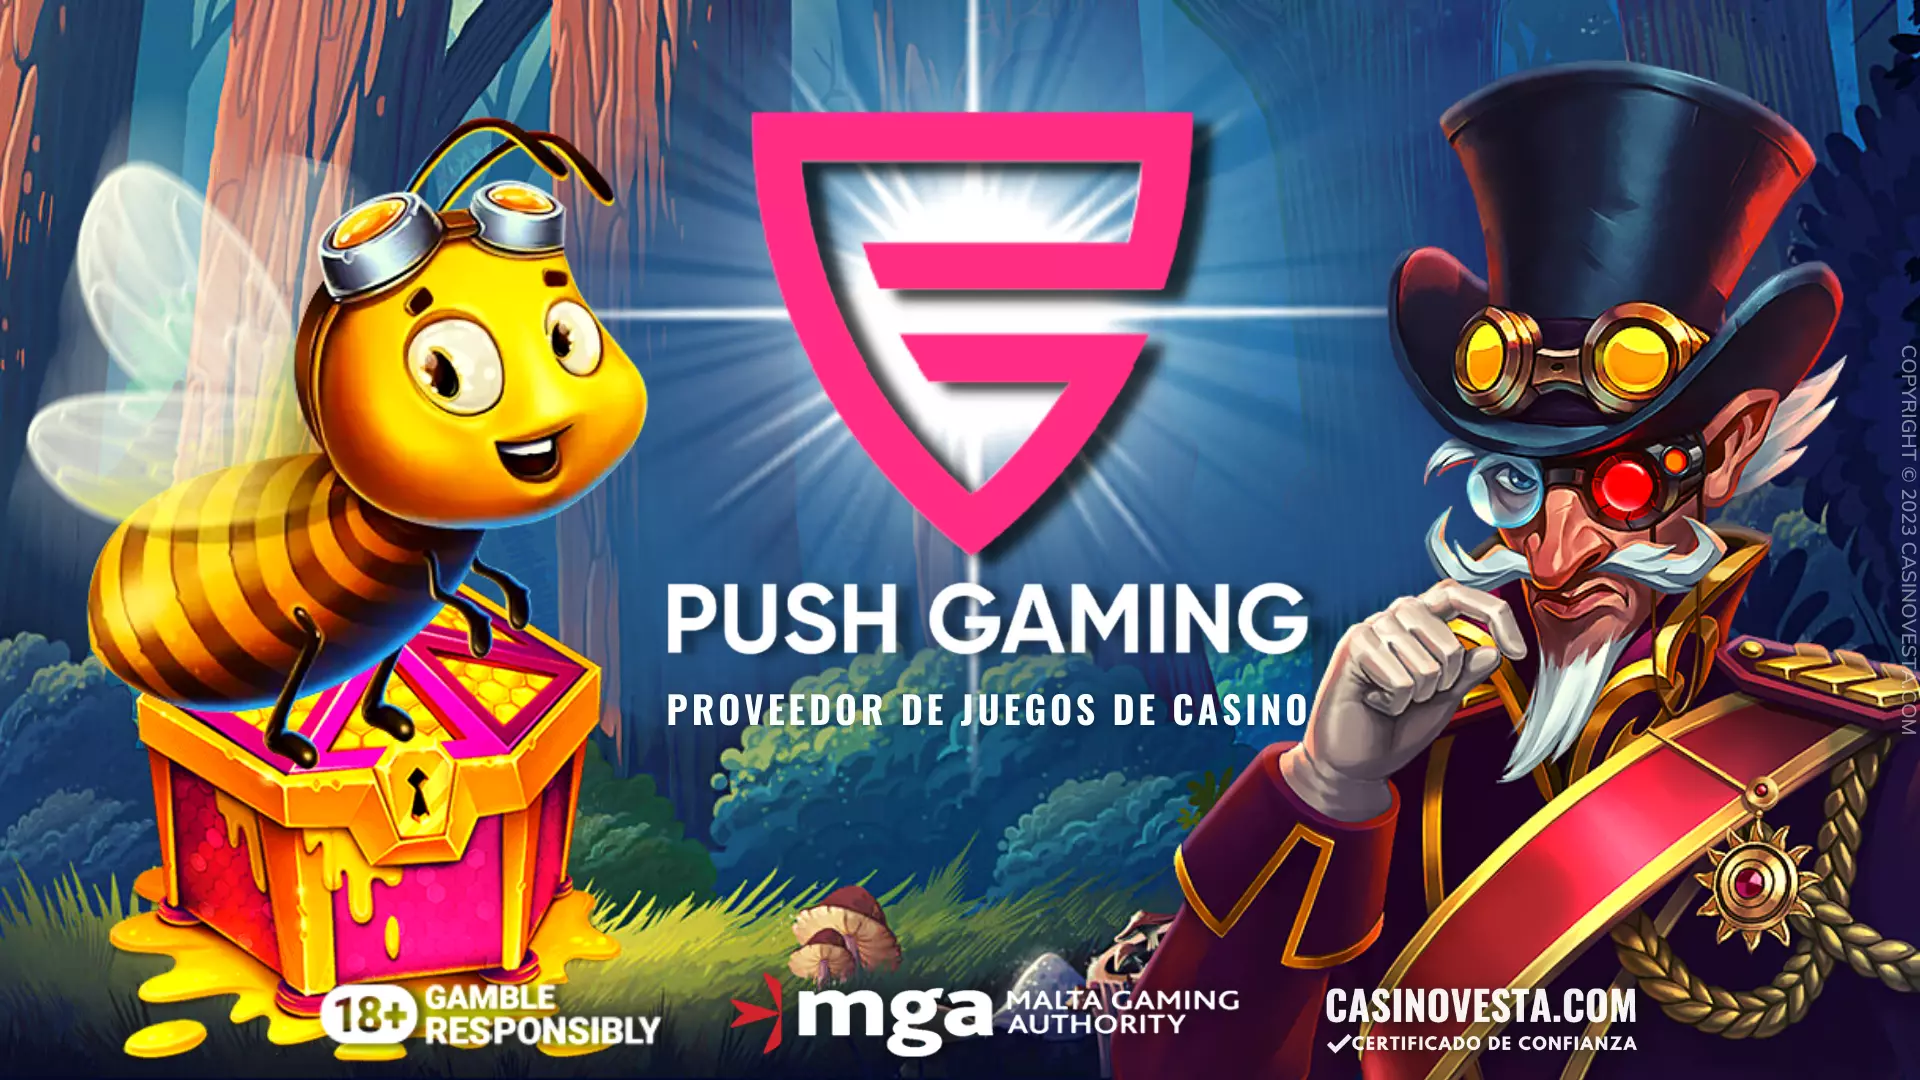 Revisión del proveedor de juegos de casino Push Gaming